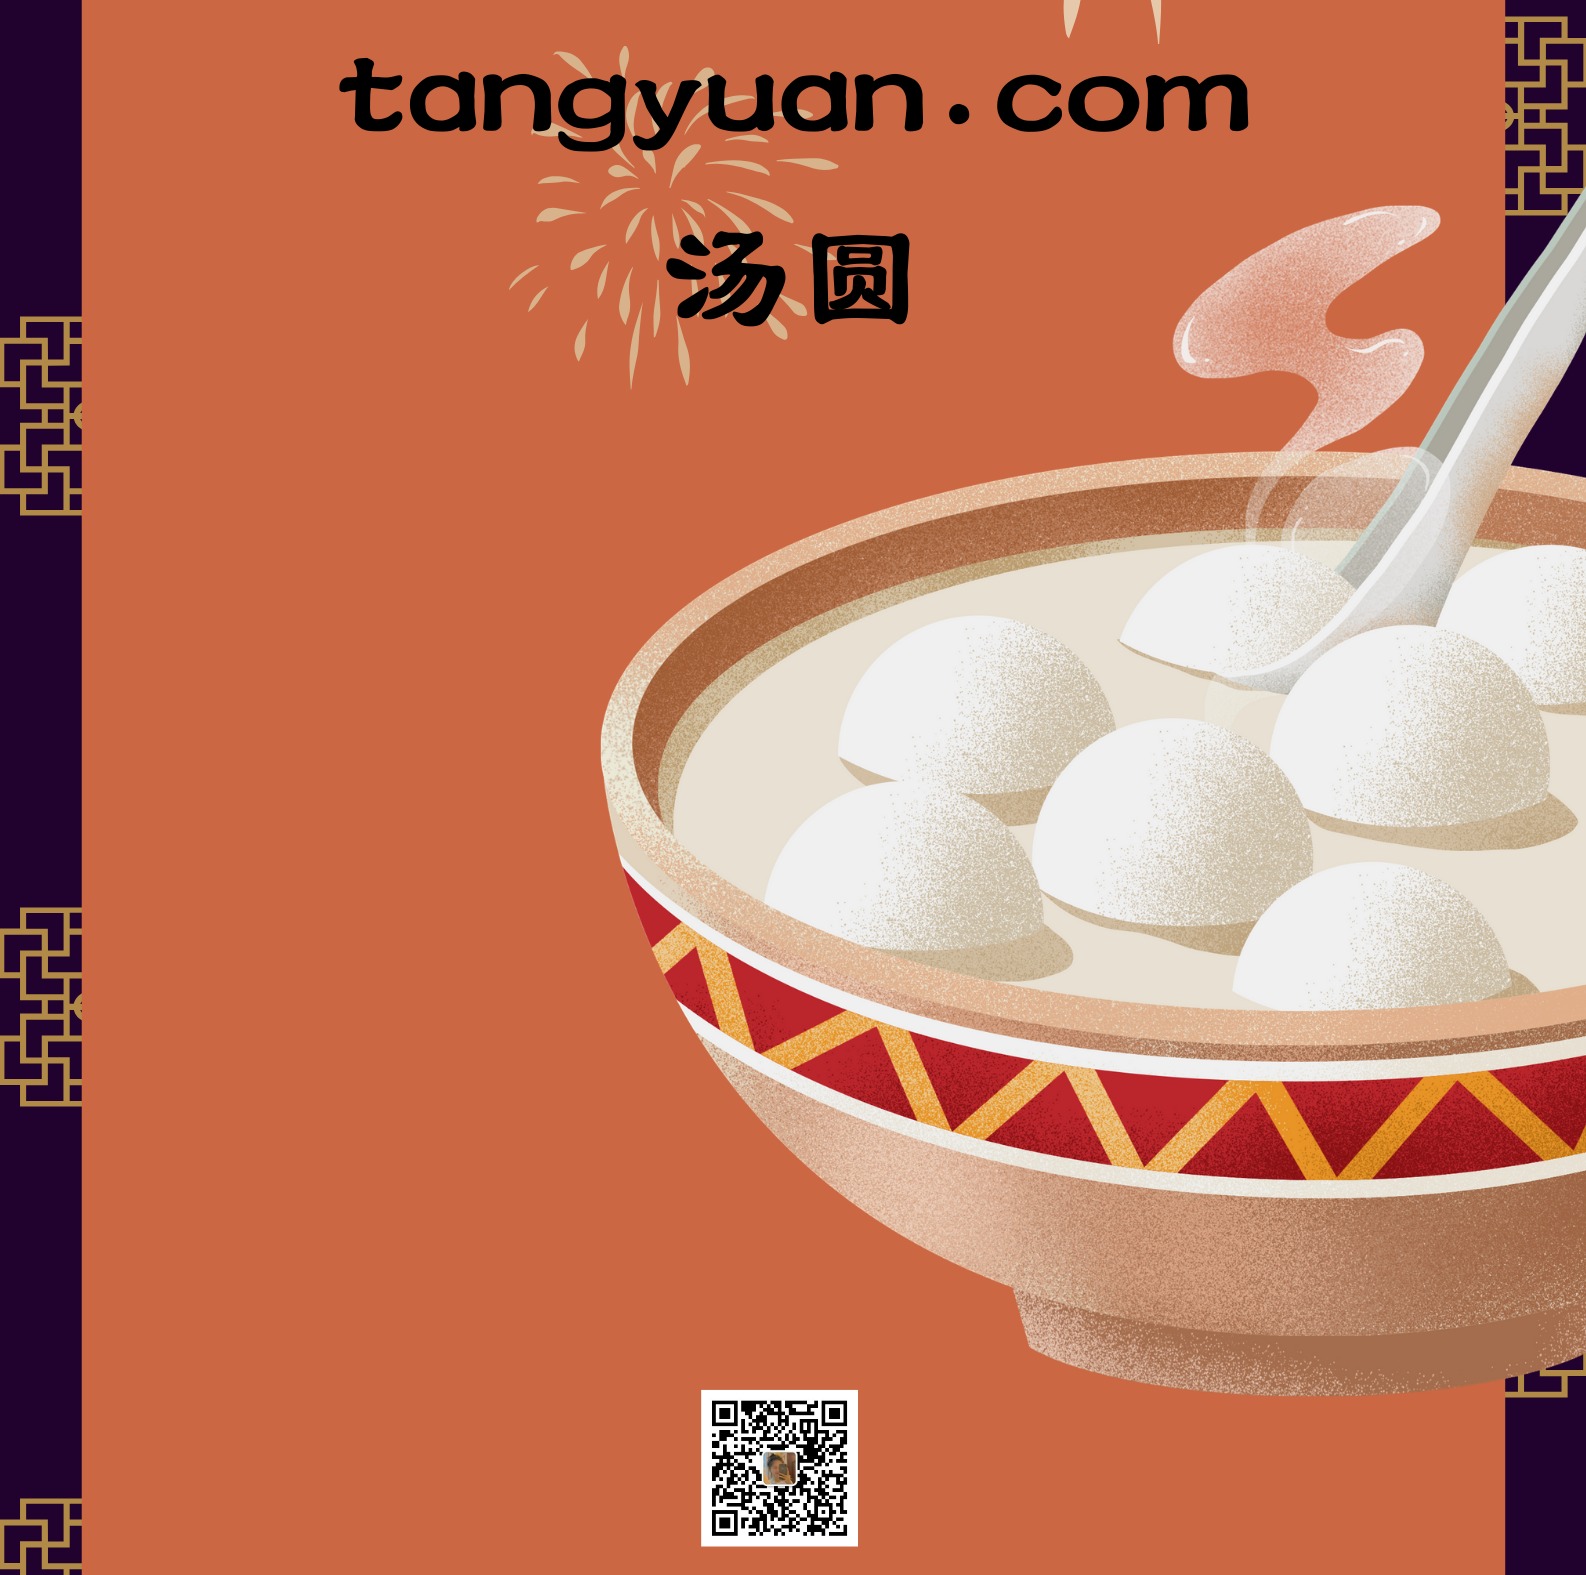 tangyuan.com